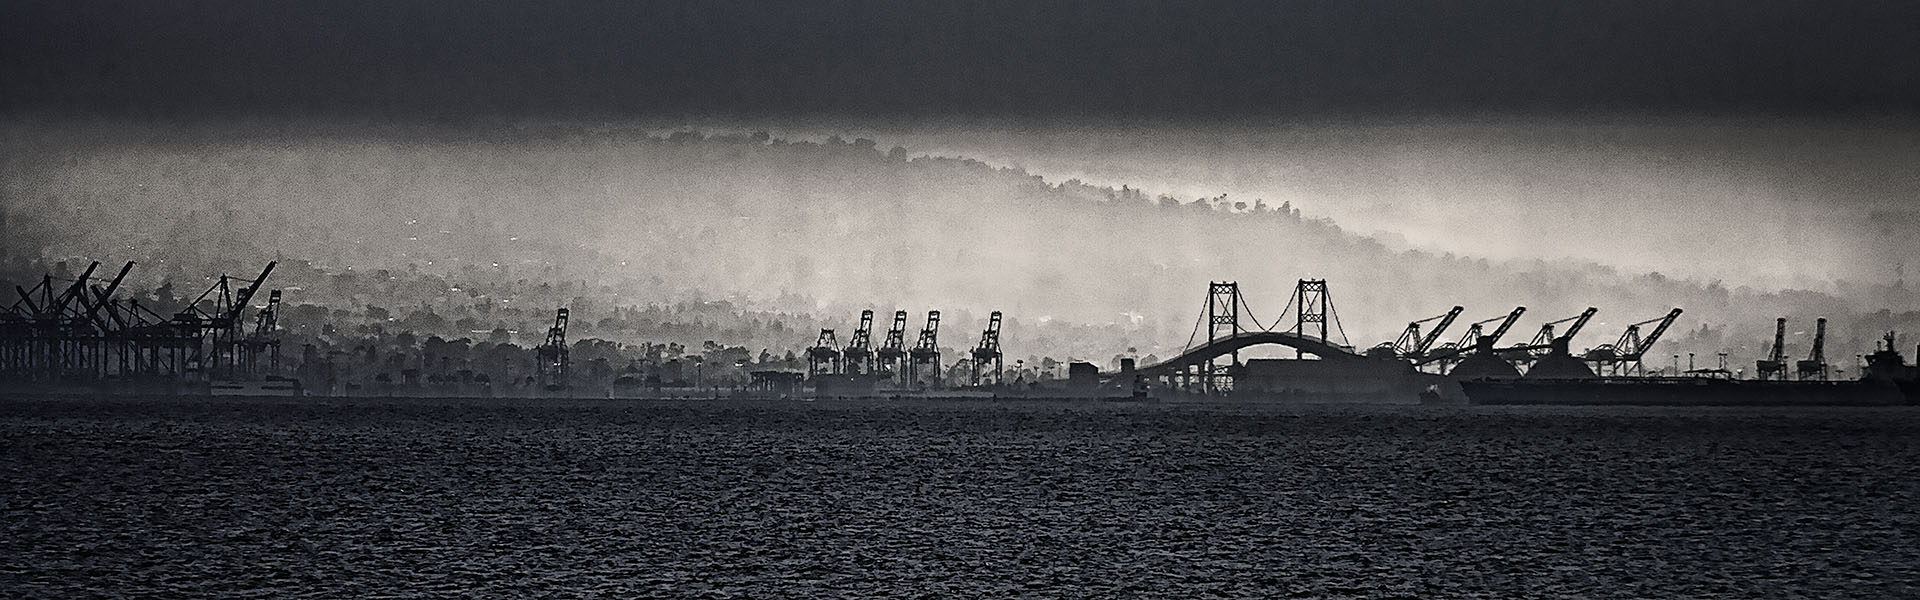 Long Beach harbor under a foggy sunset